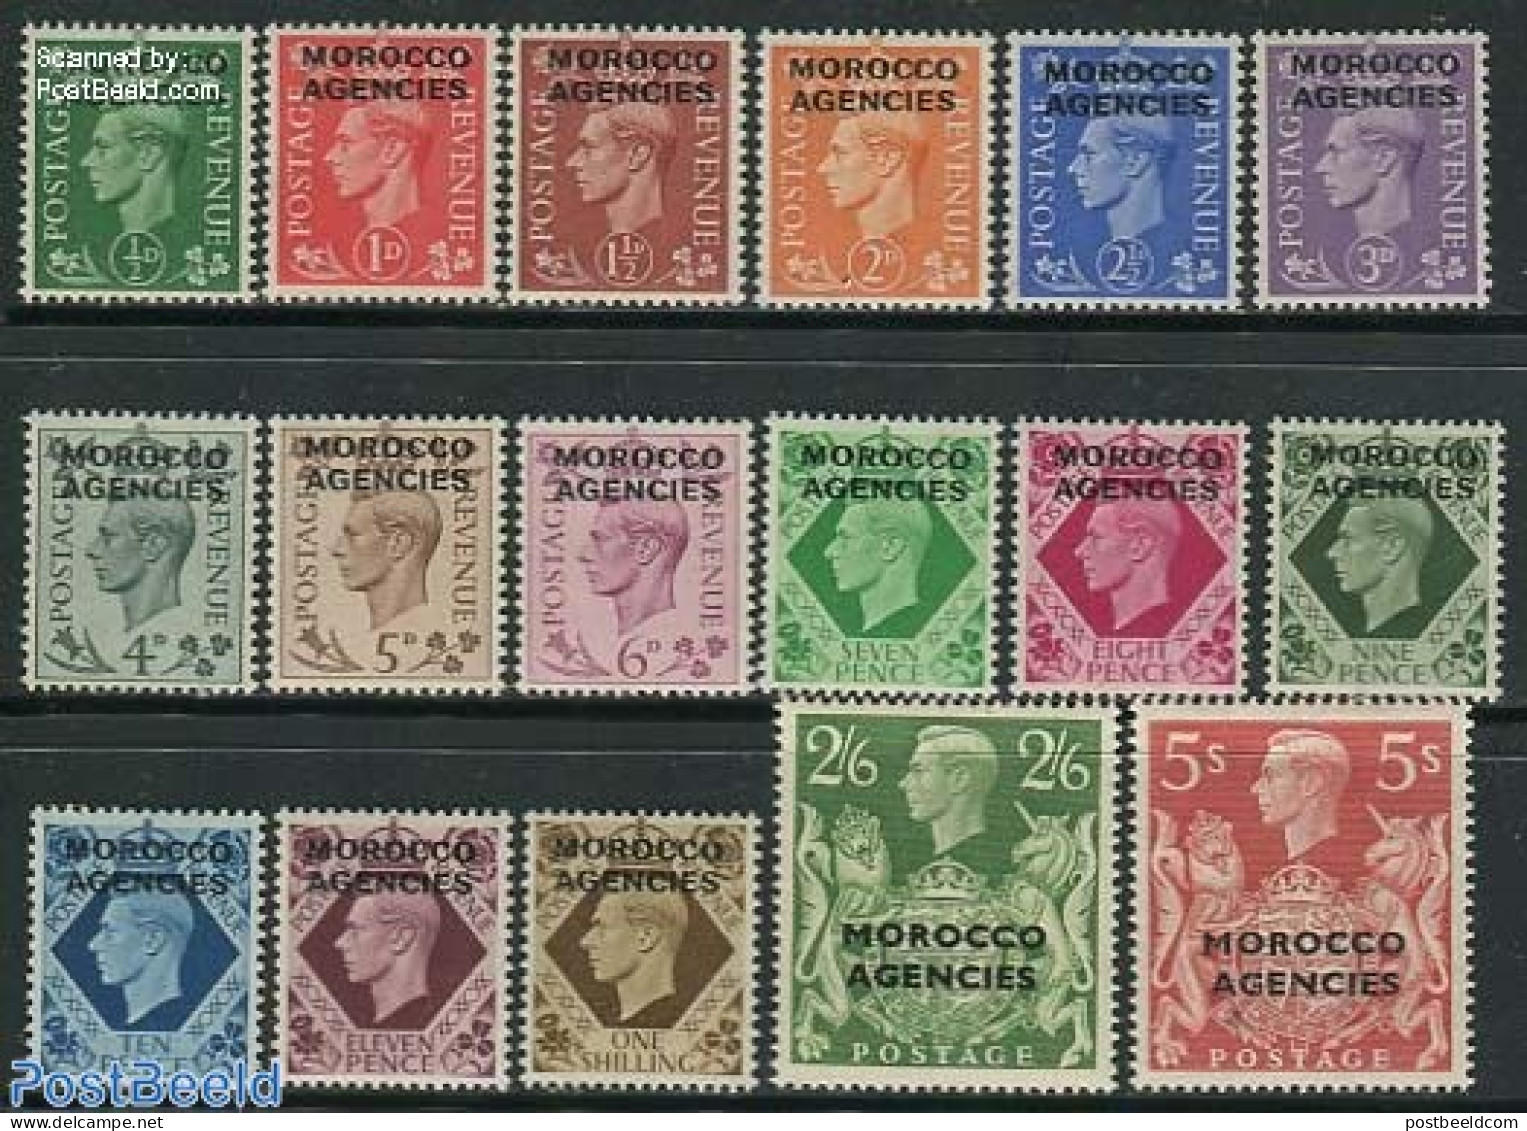 Great Britain 1949 Morocco Agencies 17v, Mint NH - Nuevos